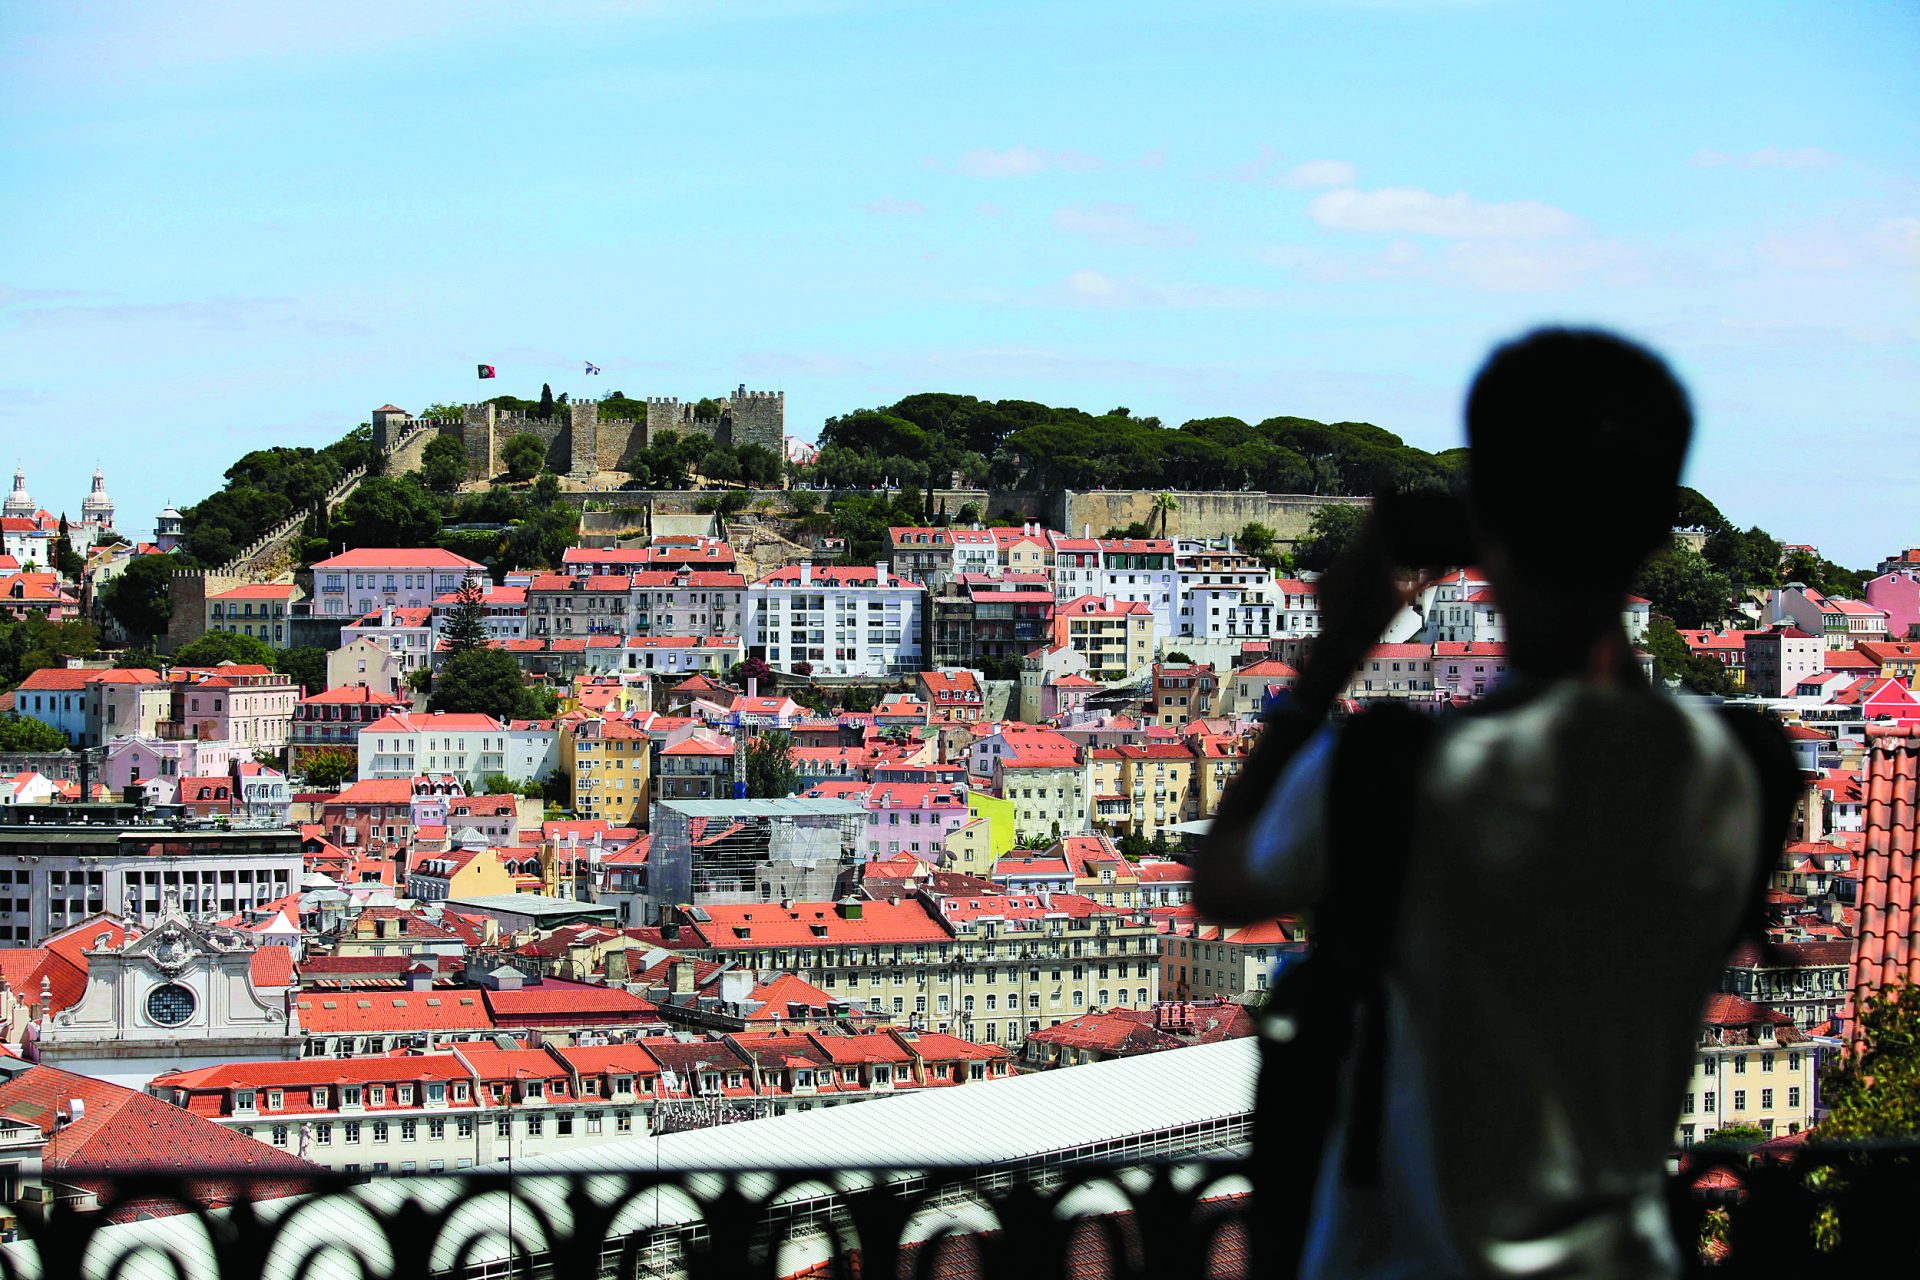 Alojamento Local pode ser travado em outras zonas de Lisboa